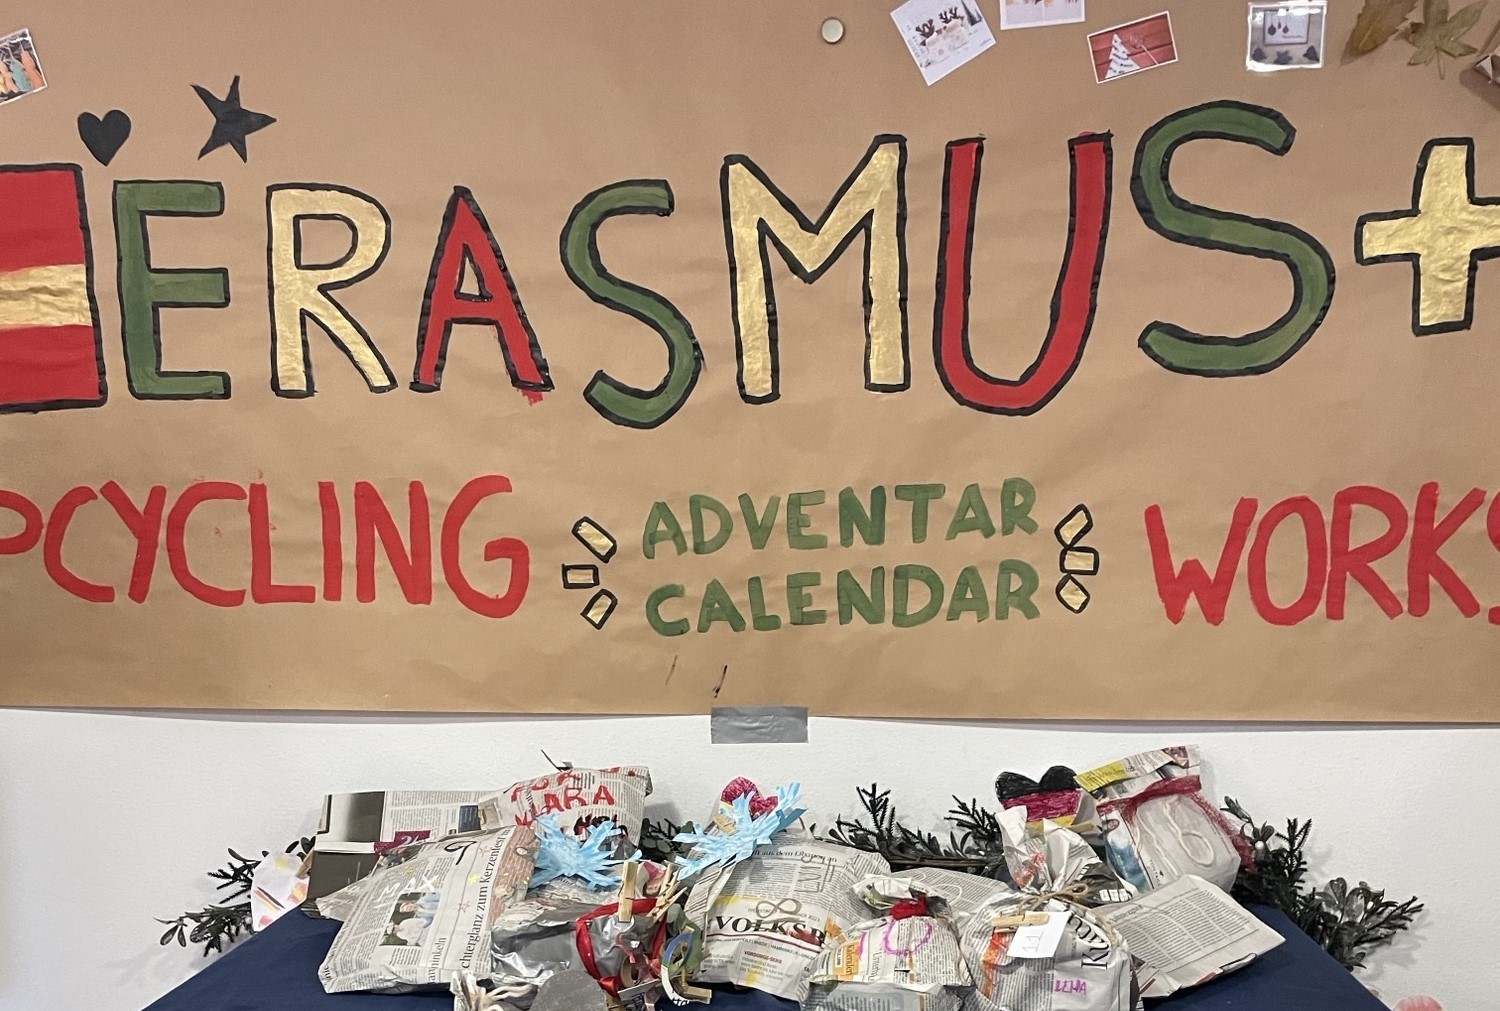 Nachrichtenbild: Erasmus+: Upcycling-Projekt und Farewell-Party